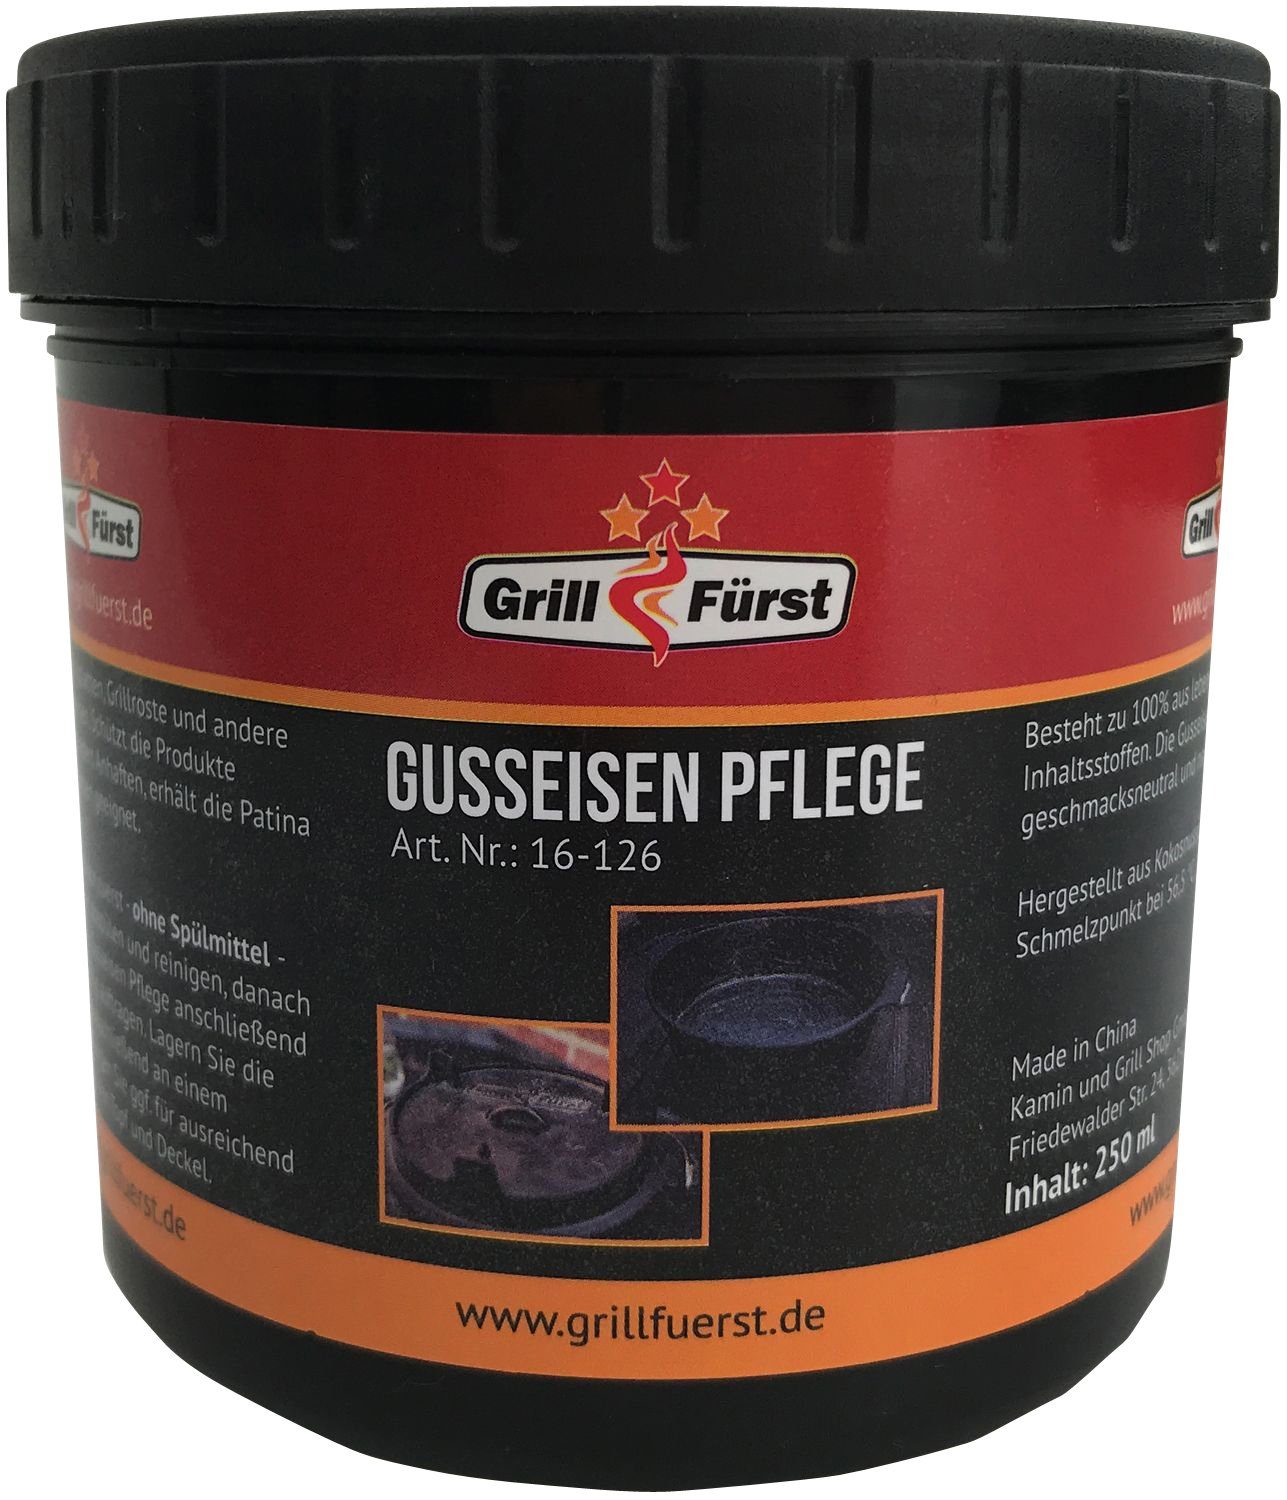 Gusseisen Pflege Edition und Grillfürst Deckelheber BBQ Bratentopf X-DEAL - Dutch Grillfürst DO9 Oven inkl. Tragetasche,